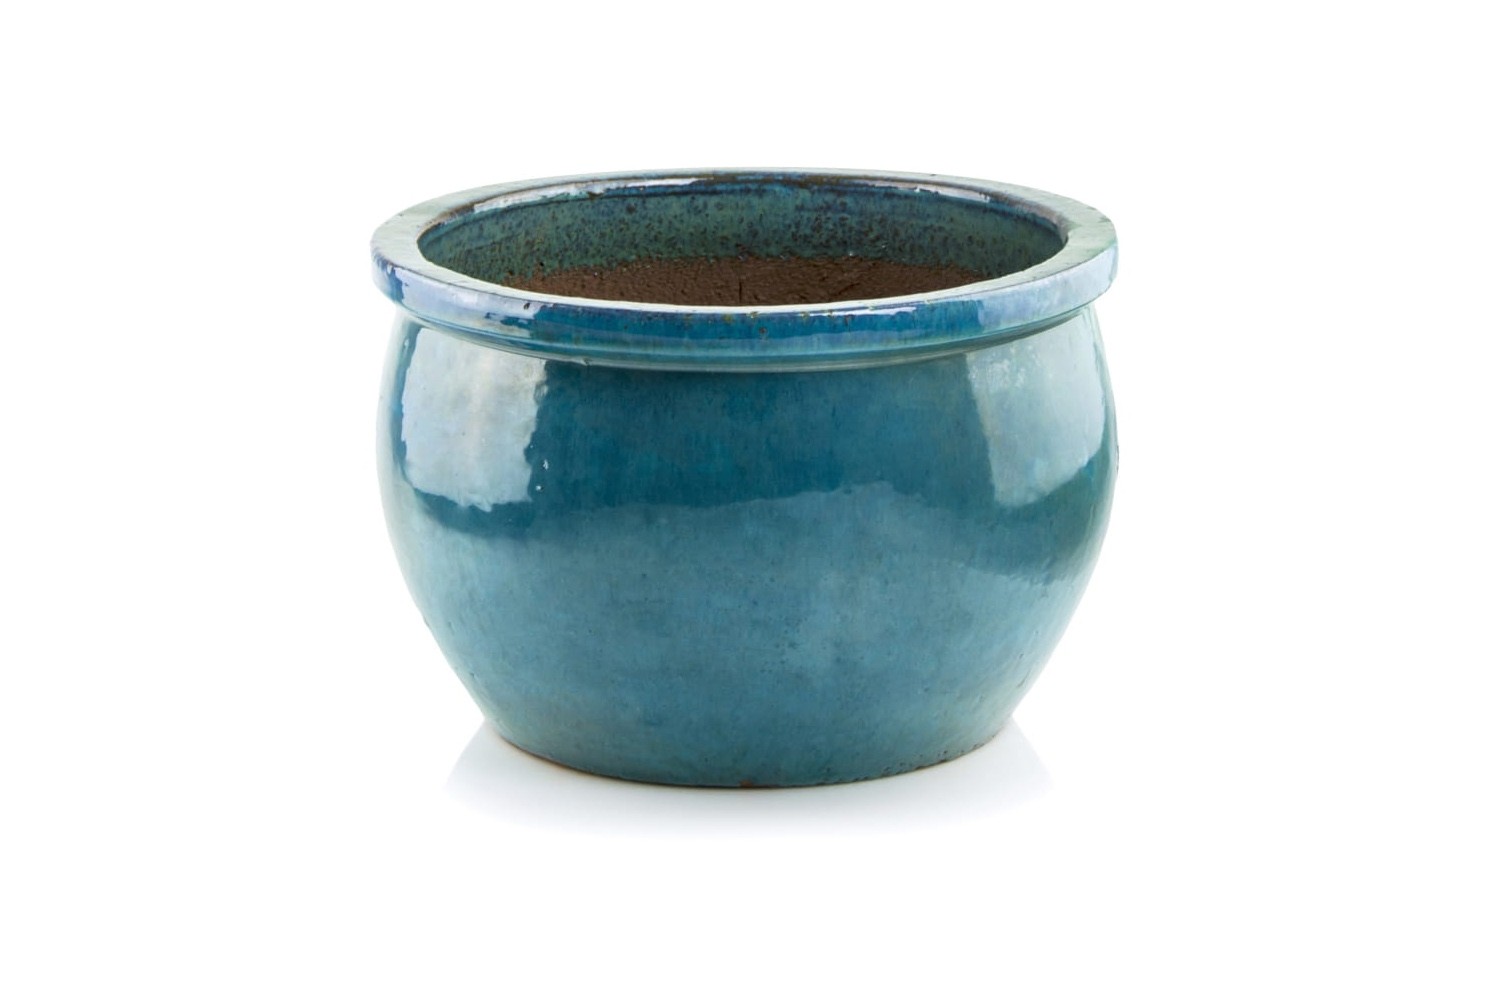 Donica ceramiczna | Glazed Round-Pot 38x25 cm